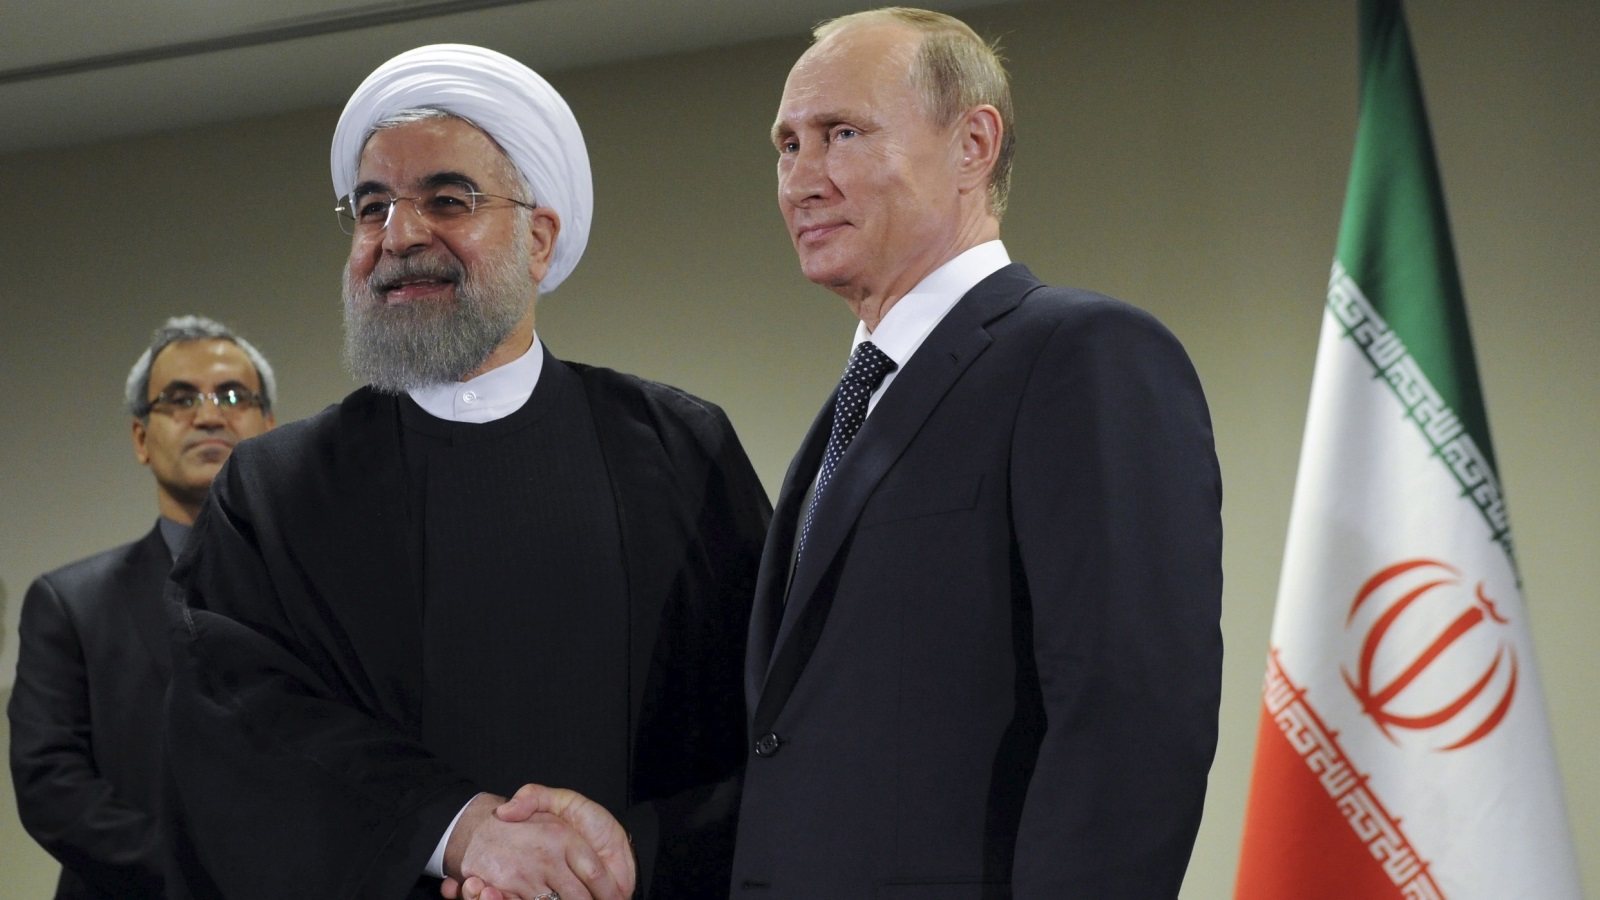 مع تزايد الخطاب المناهض لإيران، ستجد طهران نفسَها مضطرةً إلى حماية مصالحها من خلال تعاون أوثق تعقدُه مع موسكو. بالإضافة إلى ذلك، قد ترى روسيا هذا فرصة لاستحواذ نفوذ أكبر على إيران